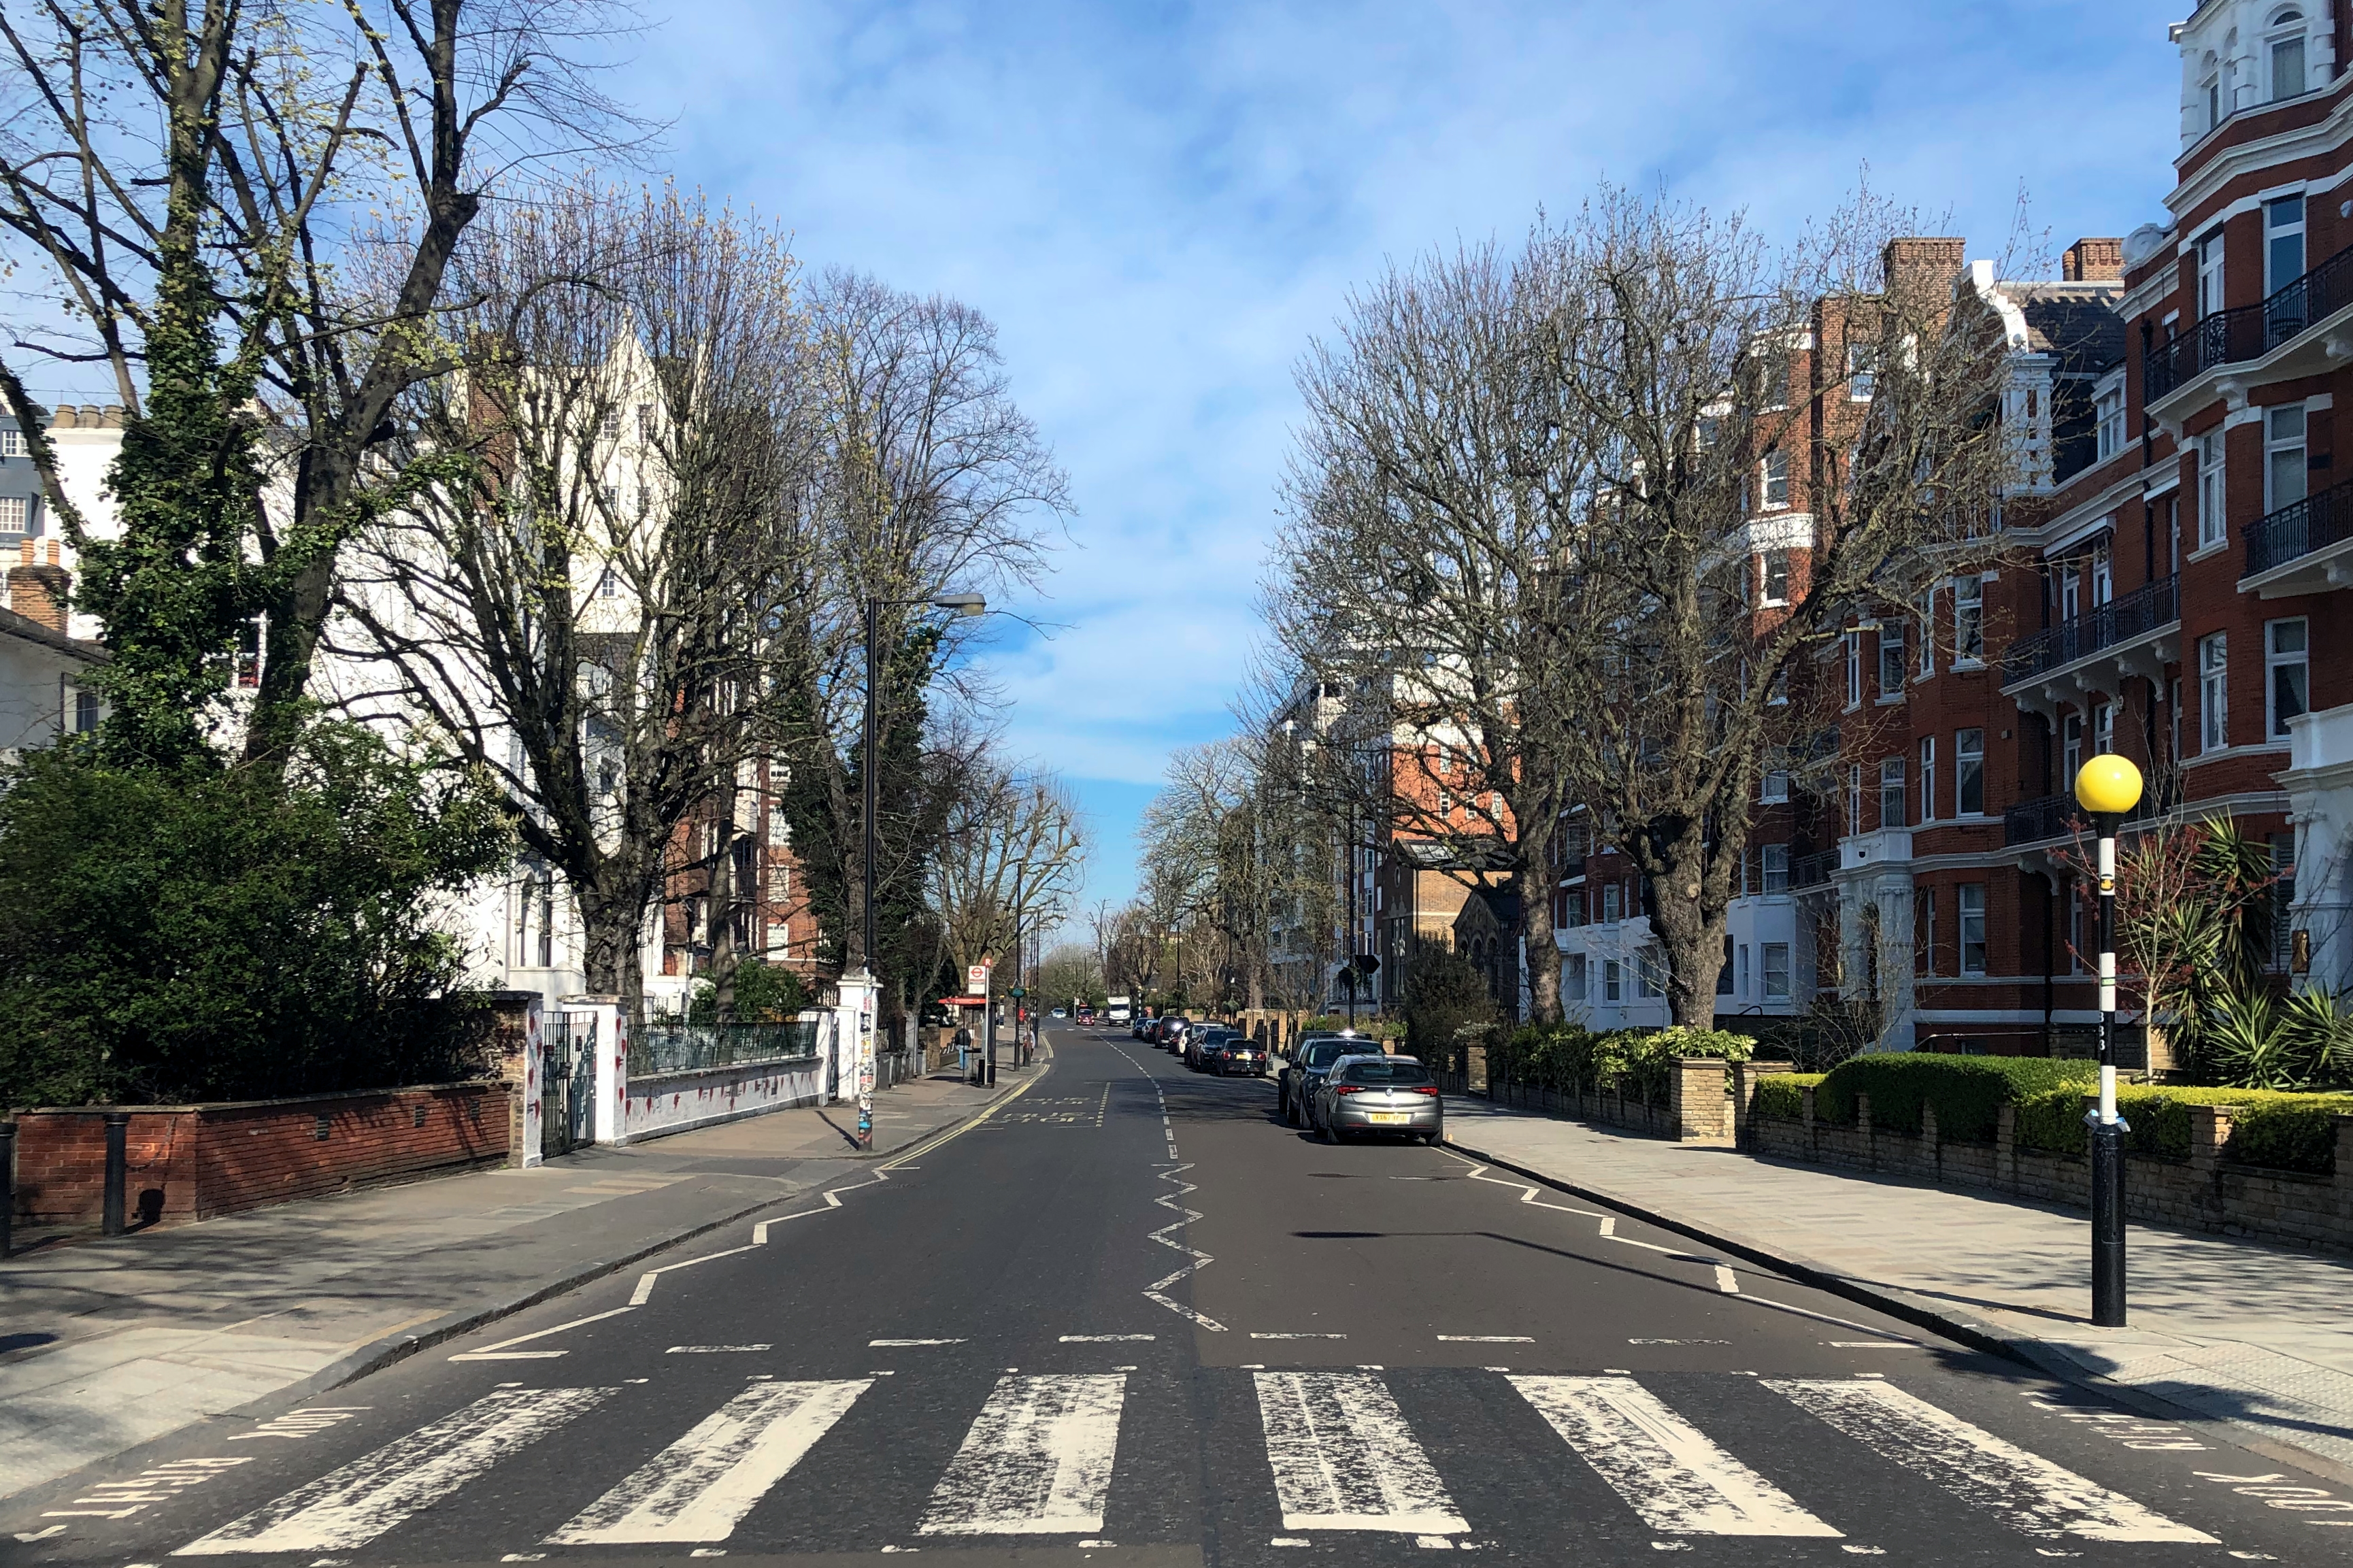 Abbey Road pedestrian crossing